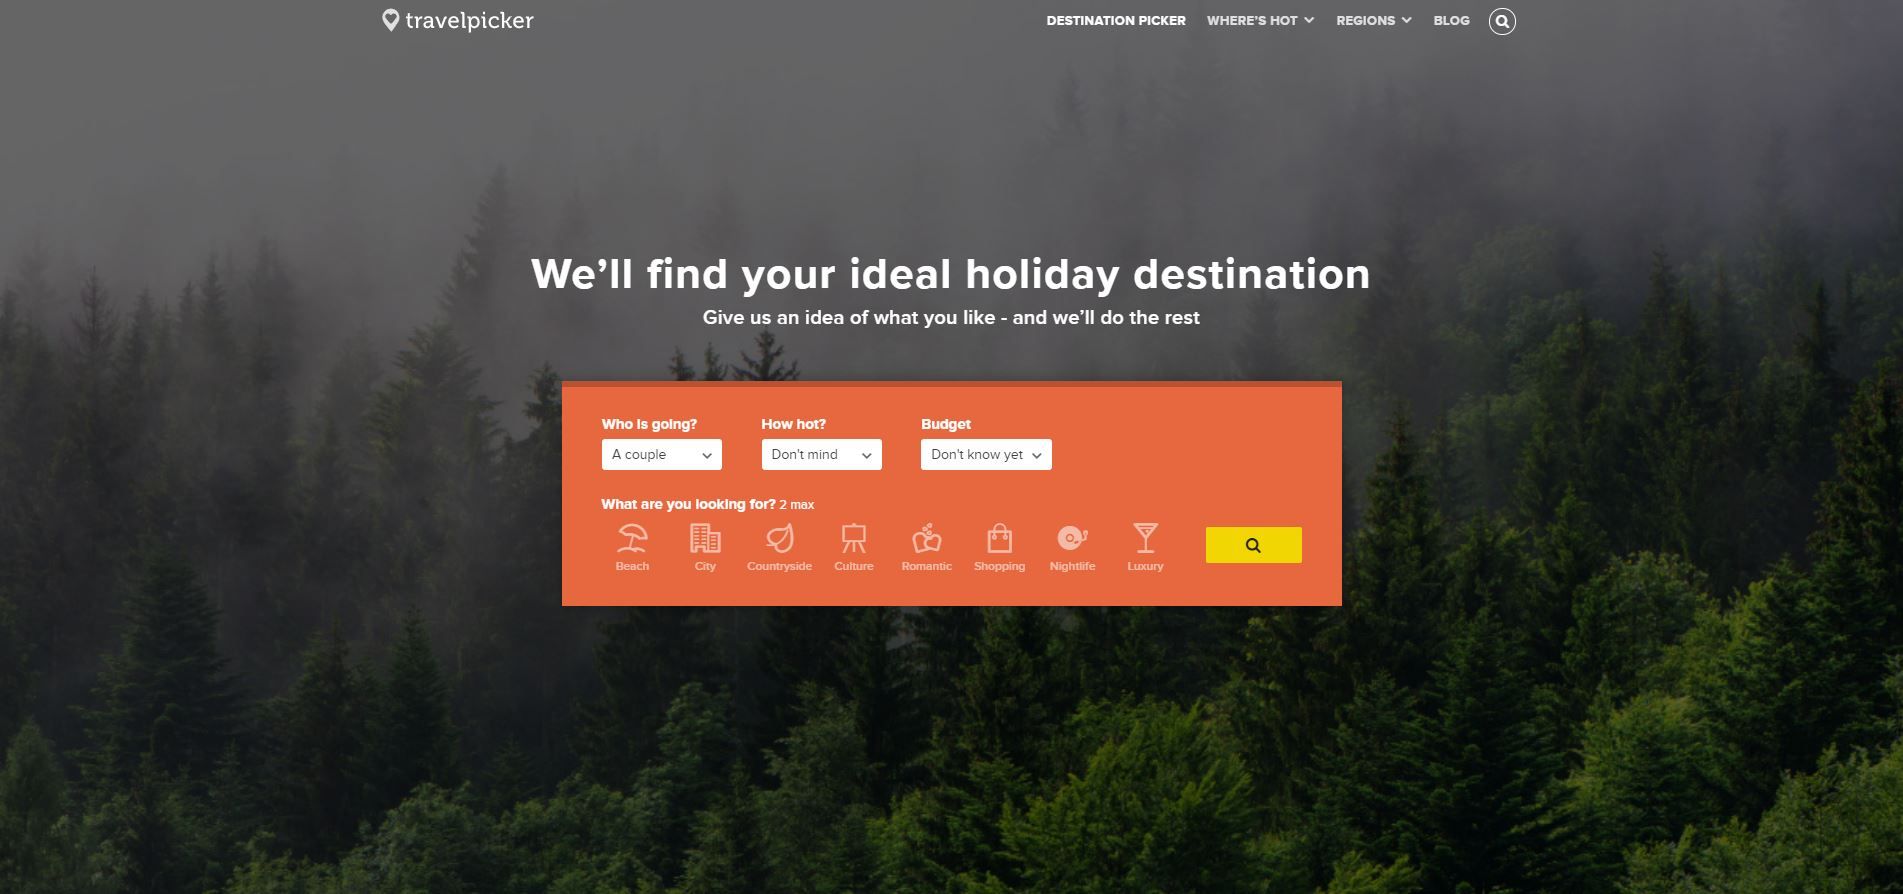 Die 7 besten Websites, um zufällige Reiseziele für Ausflüge auszuwählen - Travelpicker